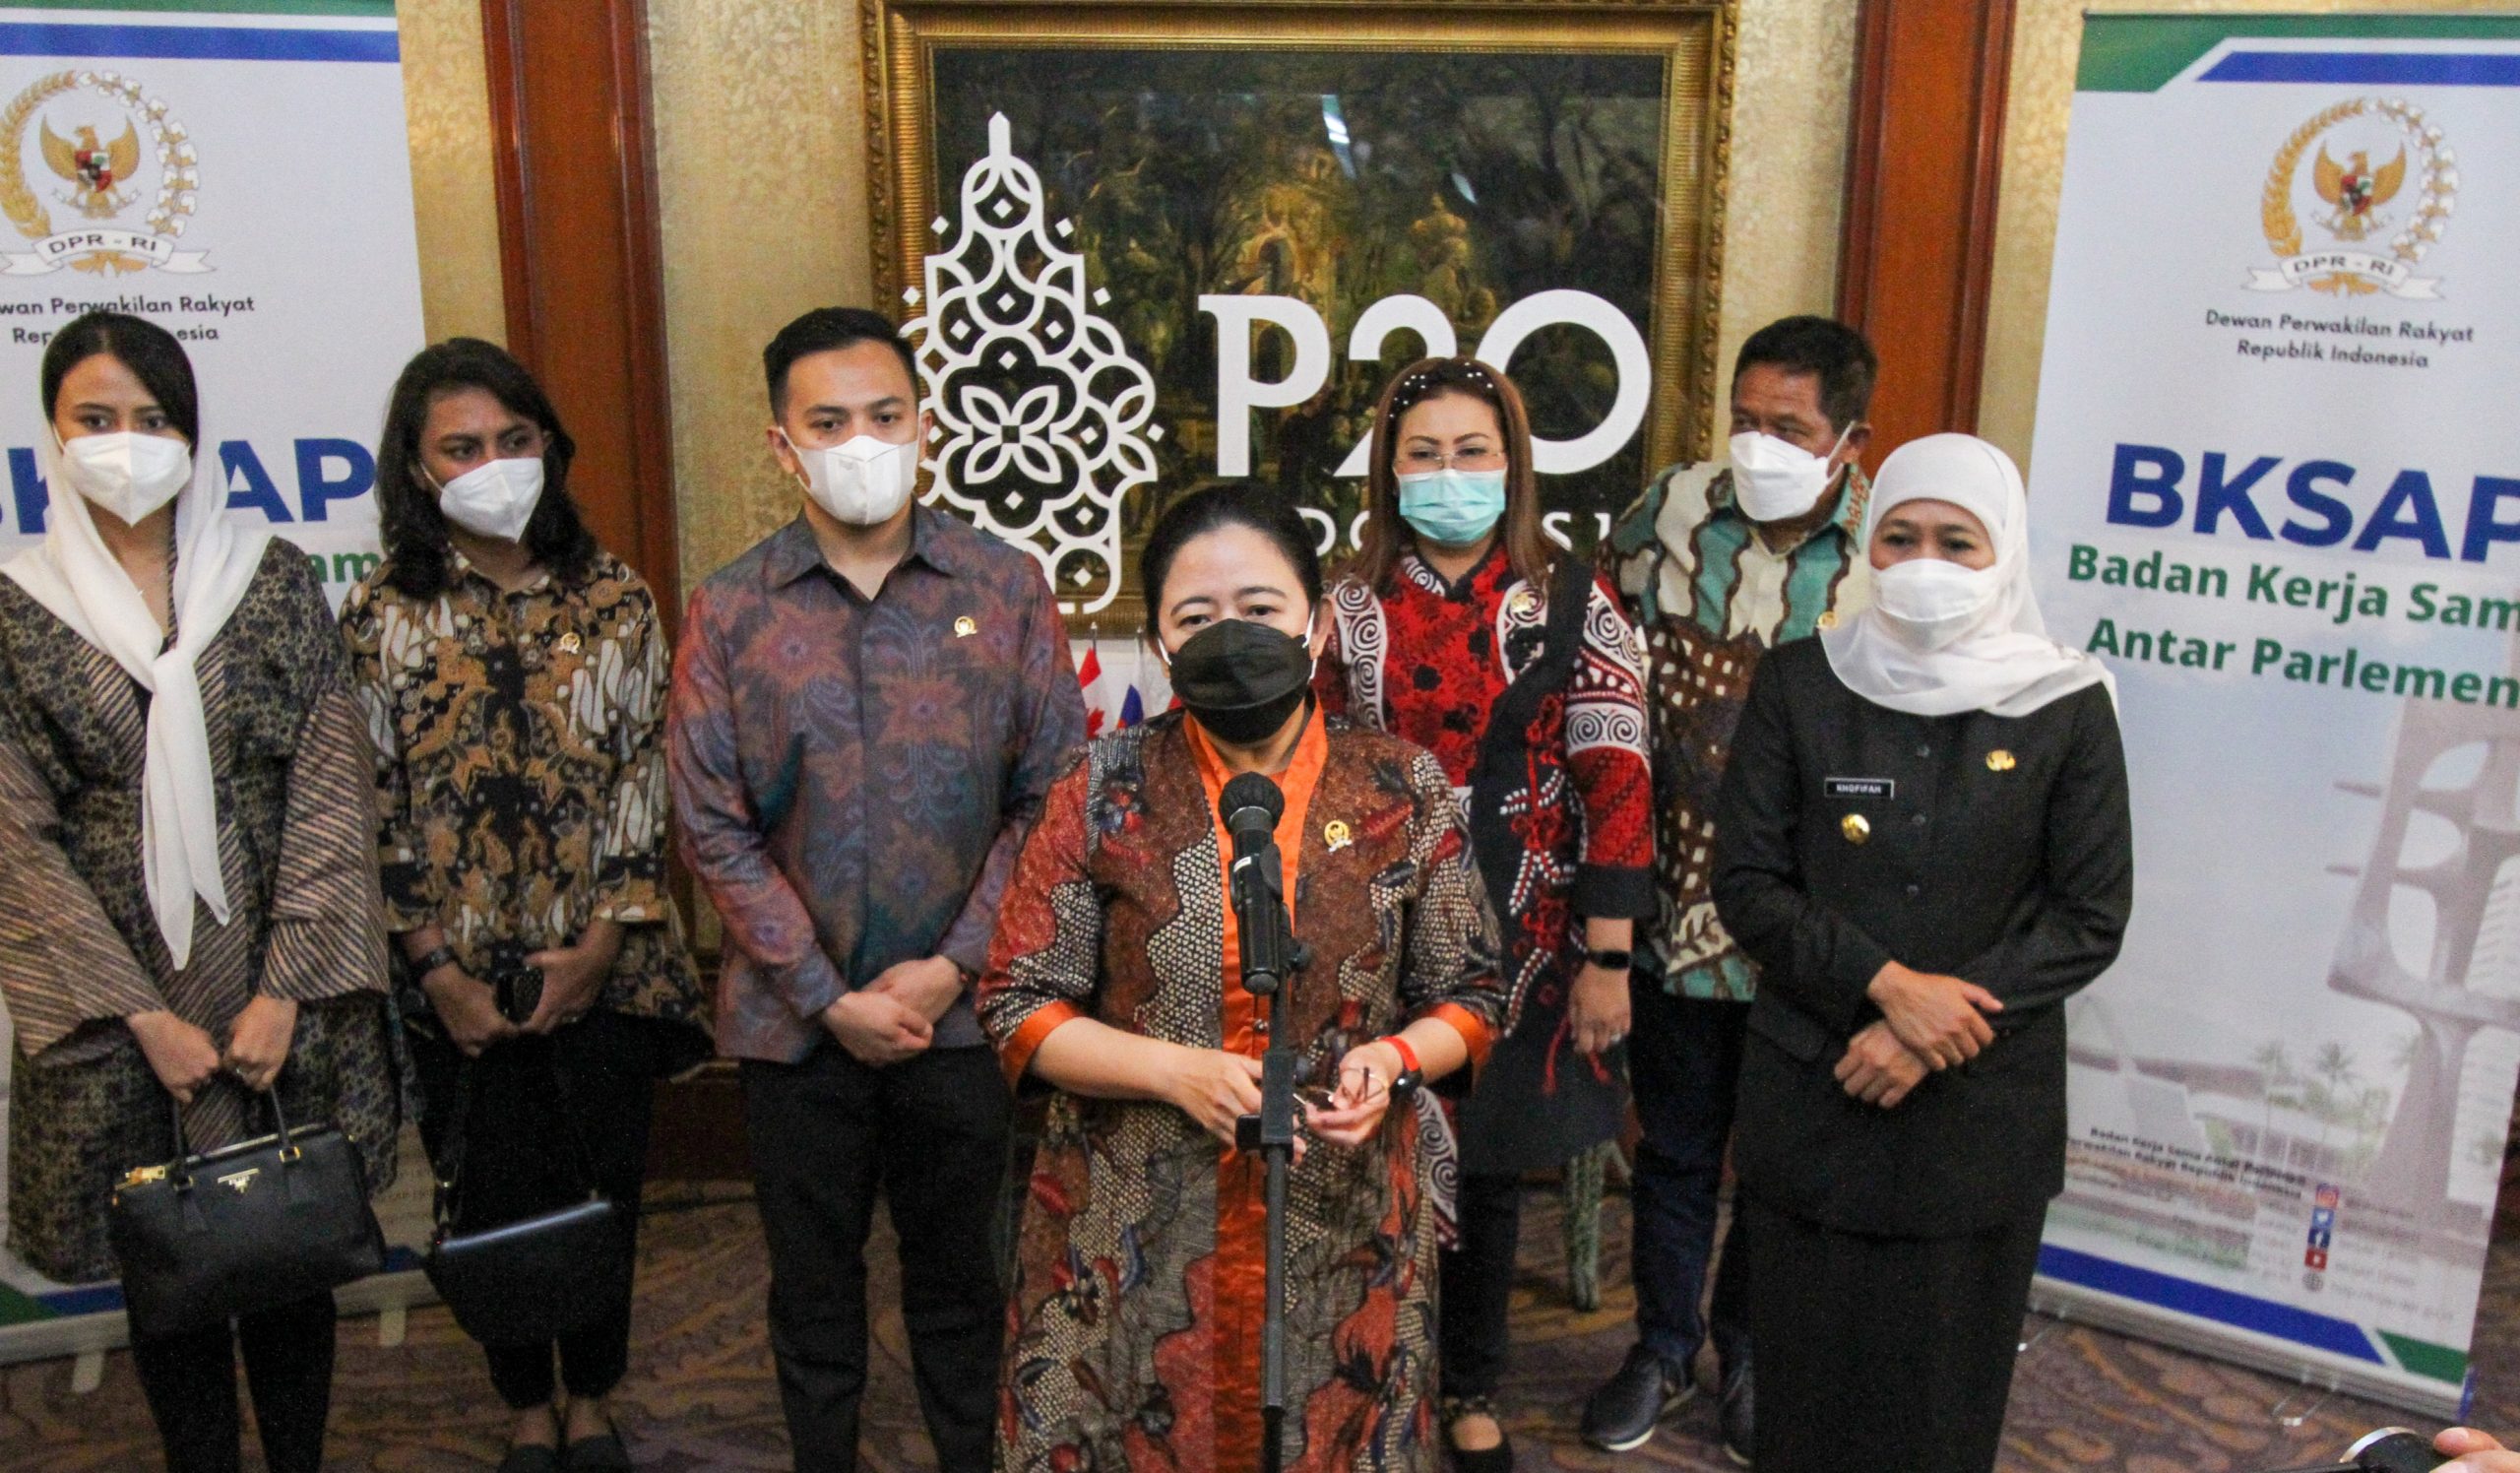 Gubernur Khofifah Bersama Ketua DPR RI Buka Kickoff Meeting P20 di Surabaya